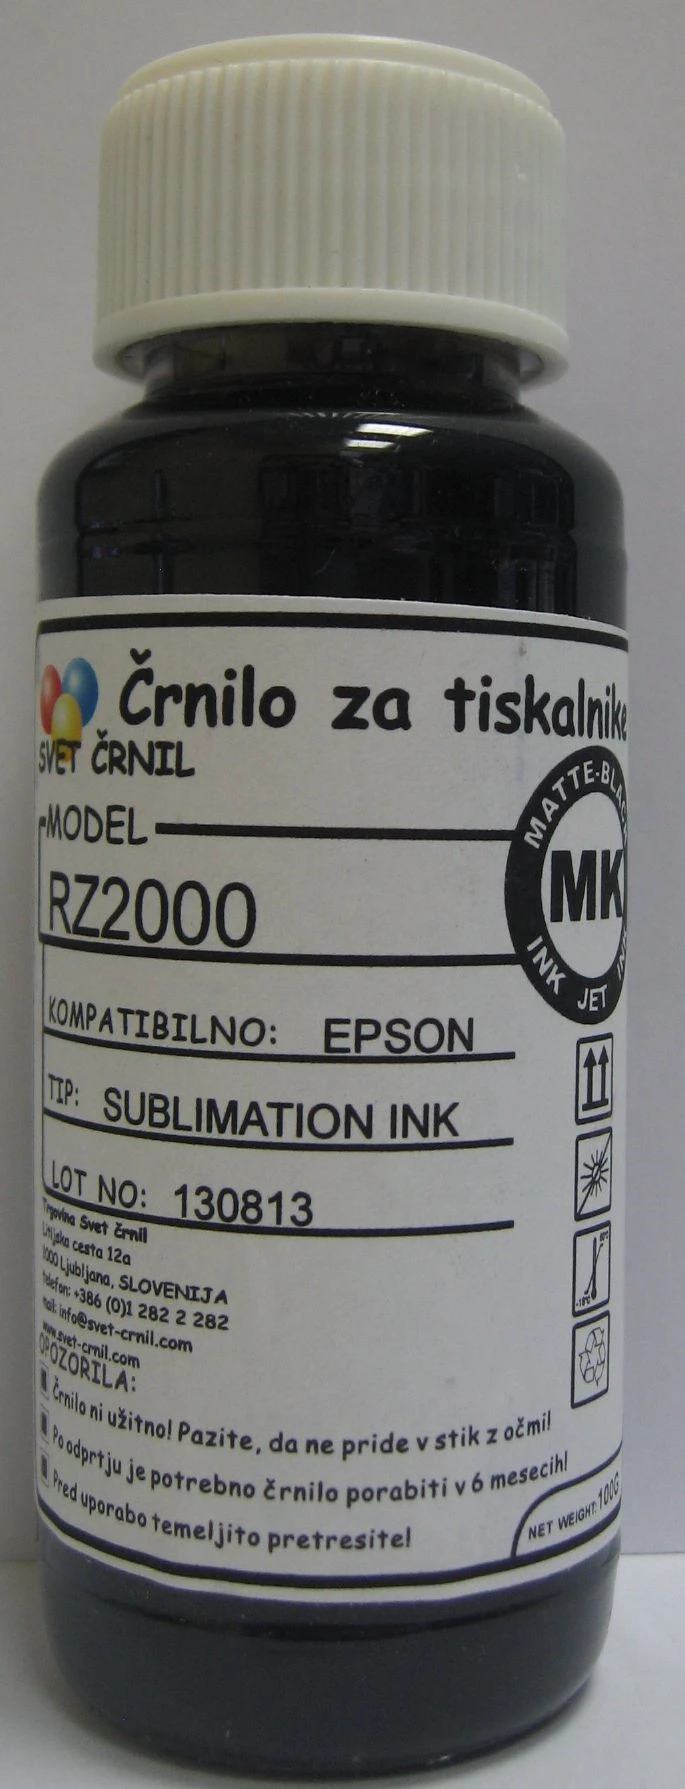 Hibridno sublimacijsko črnilo za Epson RZ2000 Matte black 100ml, rz2000,sublimacijsko črnilo,hibridna sublimacija,sublimacija